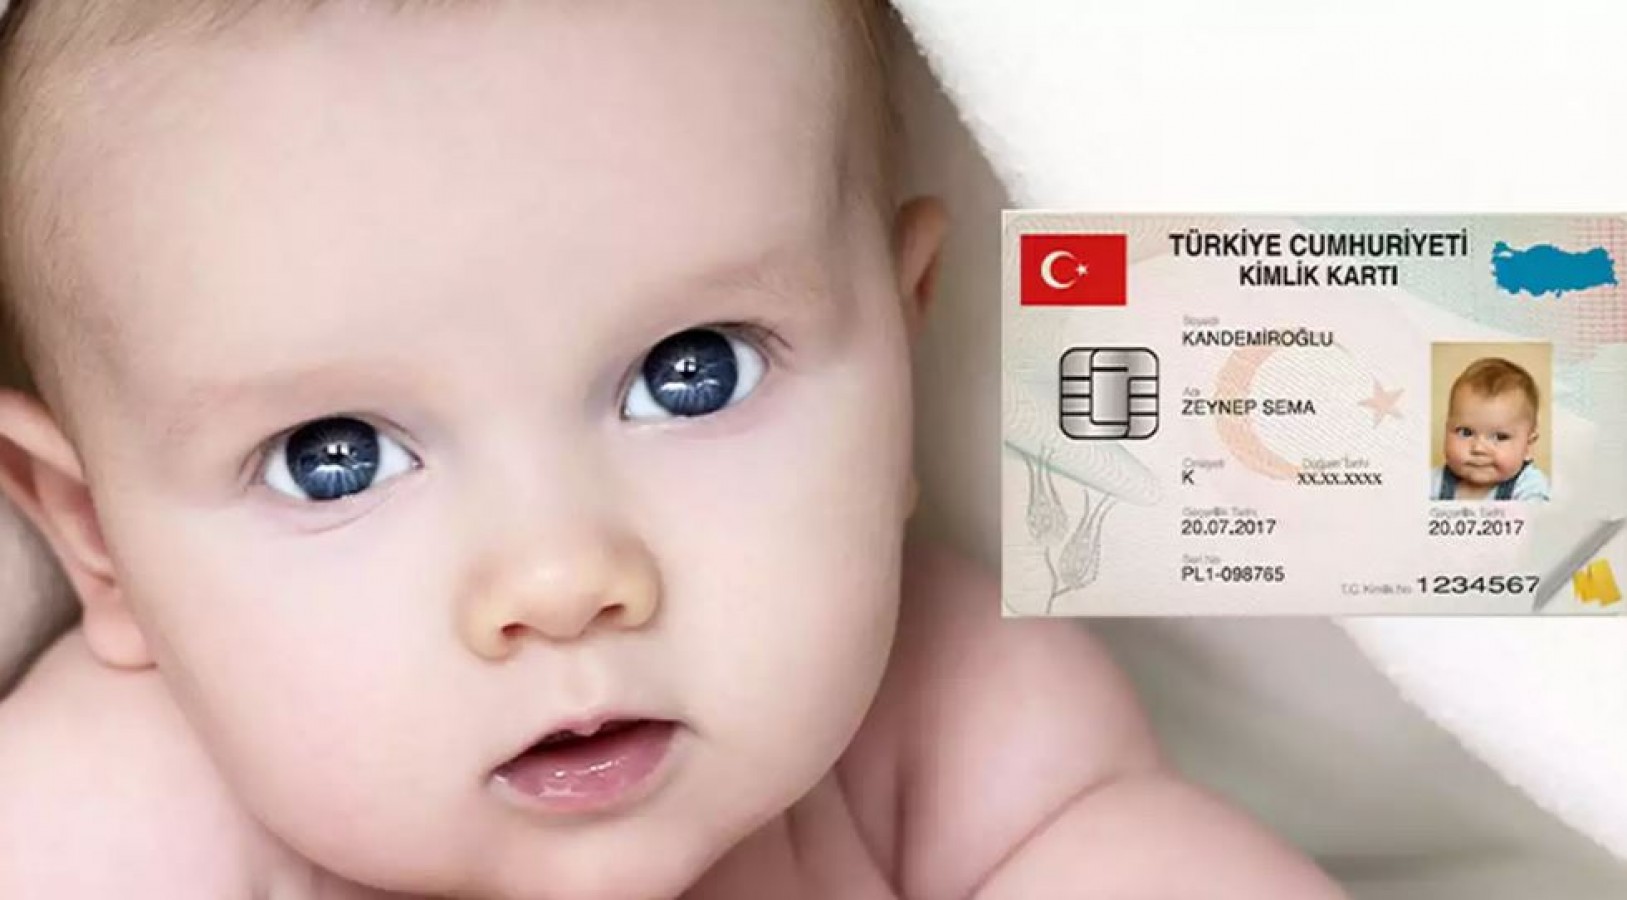 Yeni doğan bebeğin kimlik kartı ücretsiz eve geliyor